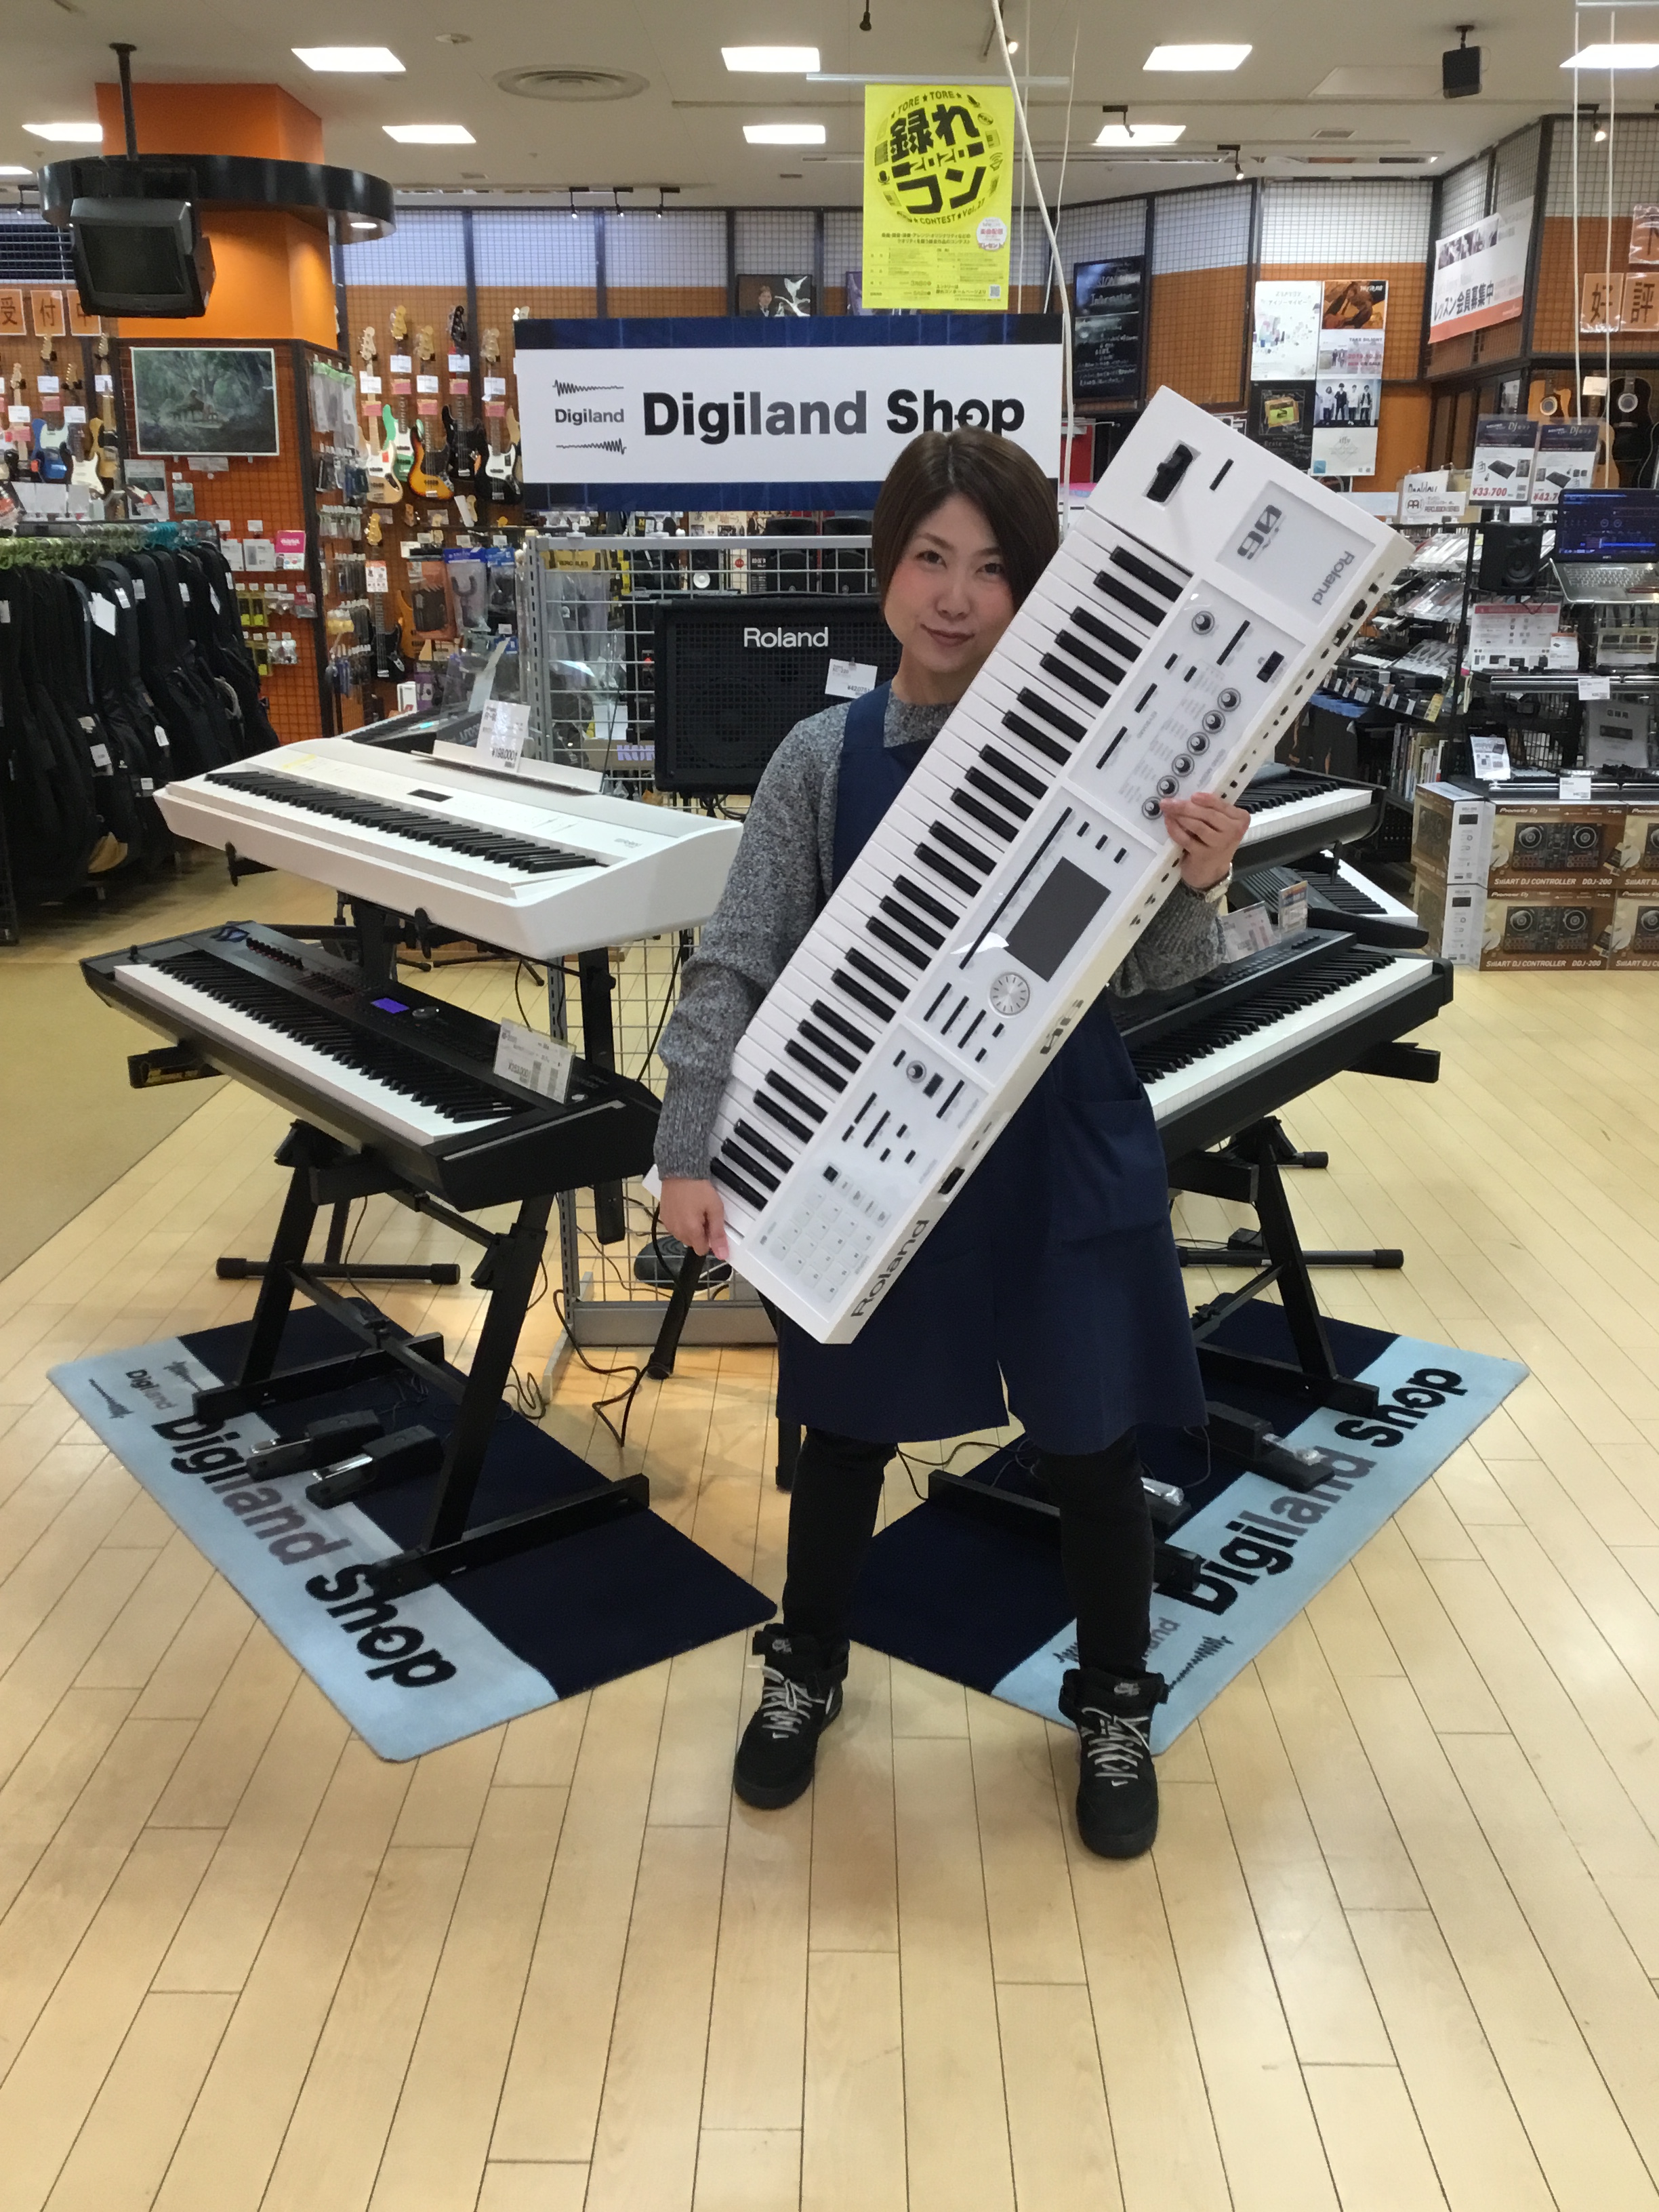 Digiland Shop シンセ・キーボード・ステージピアノ展示モデル一覧